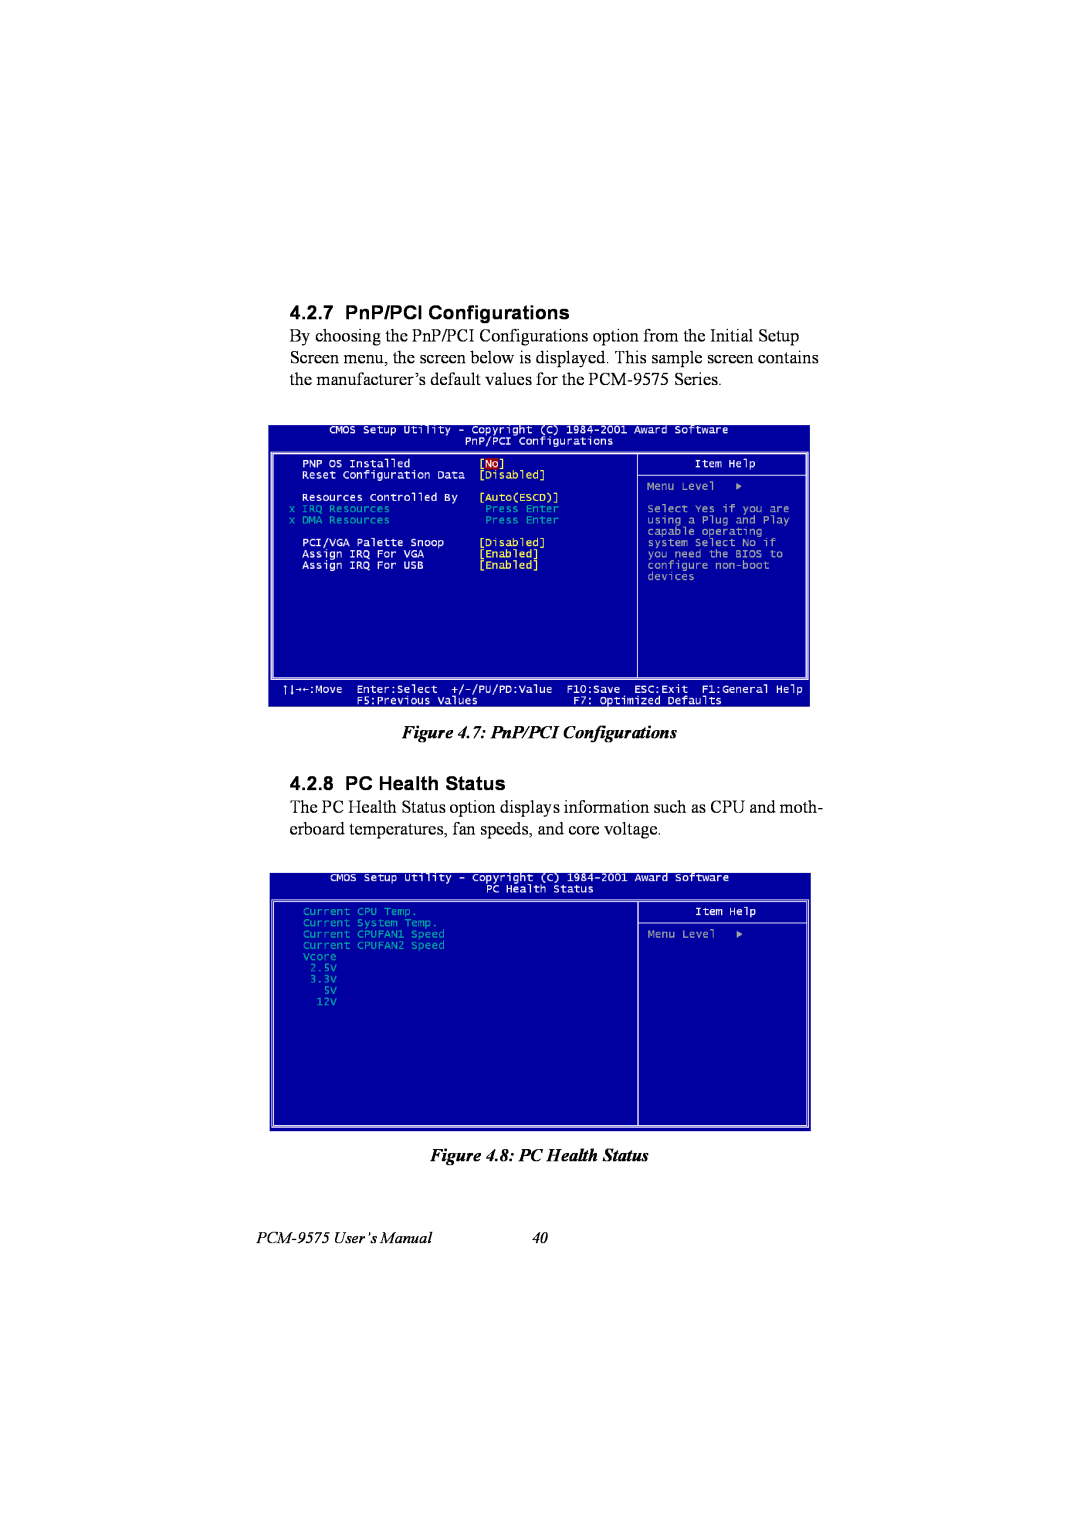 IBM PCM-9575, 100/10 user manual 4.2.7 PnP/PCI Configurations, 8 PC Health Status 